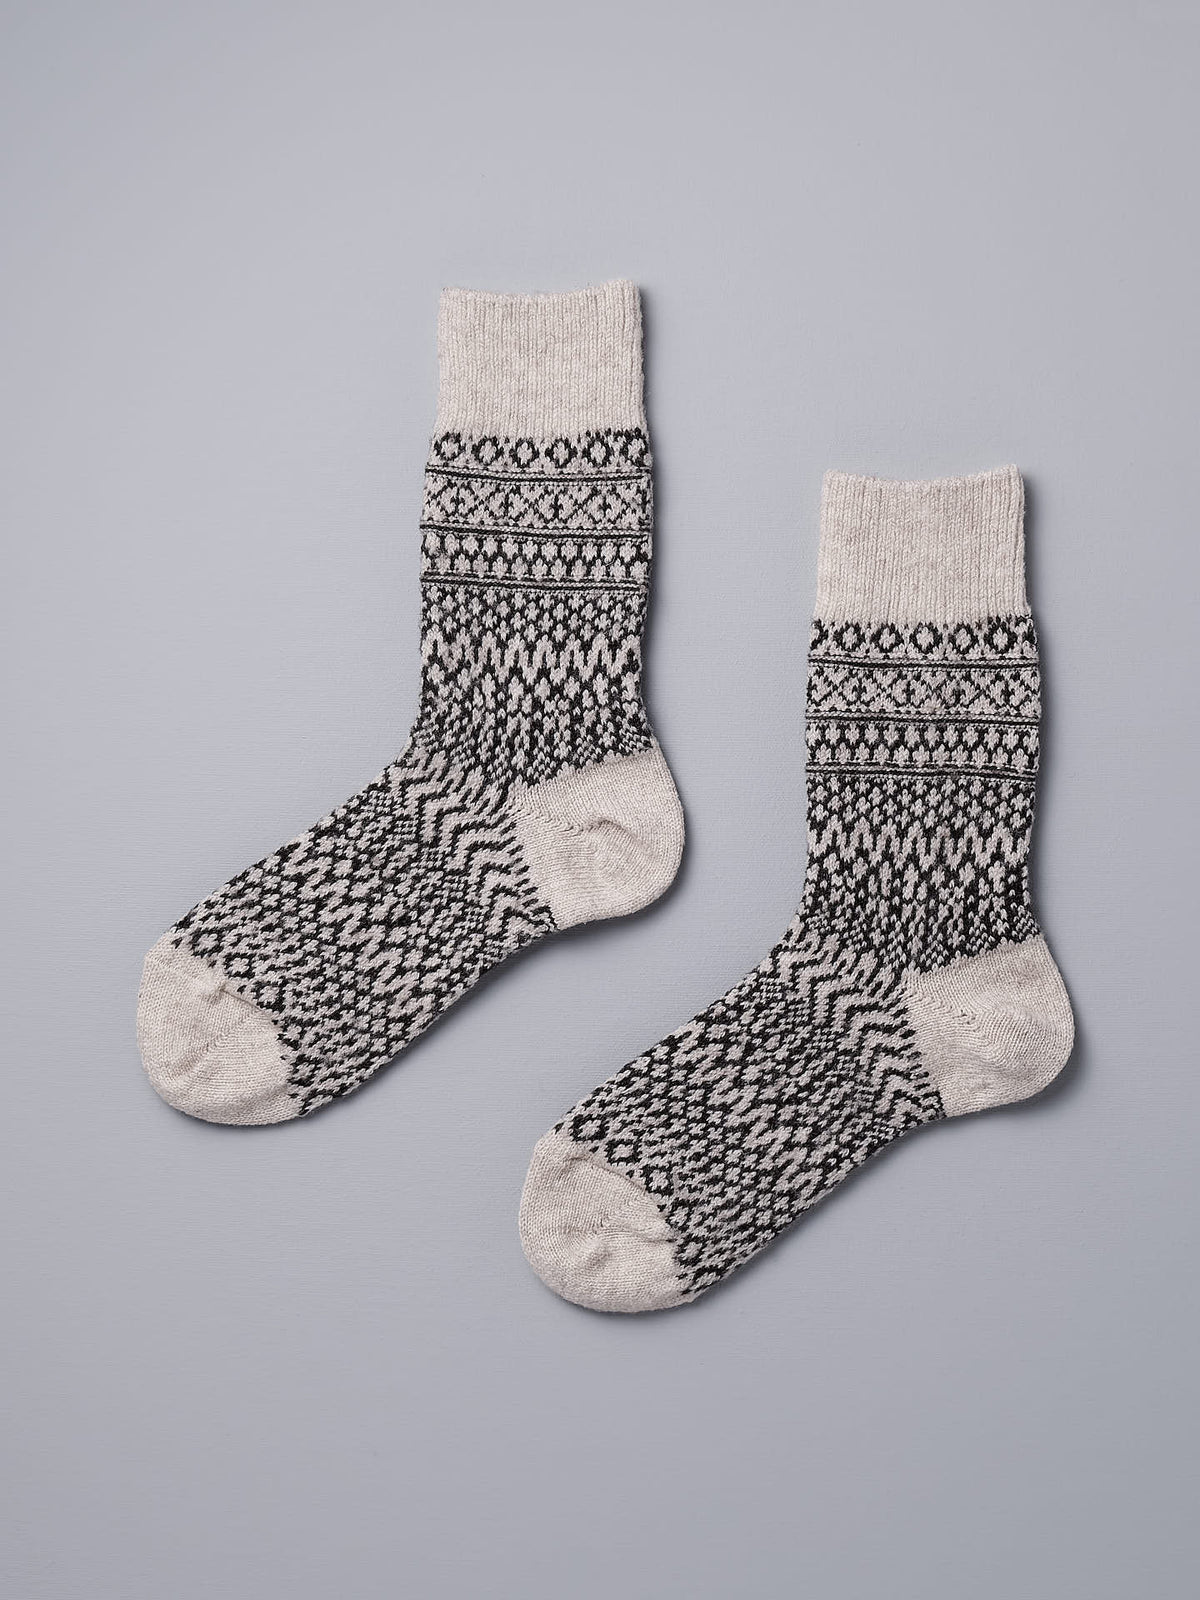 A pair of Oslo Wool Jacquard Socks – Oatmeal by Nishiguchi Kutsushita on a grey background.